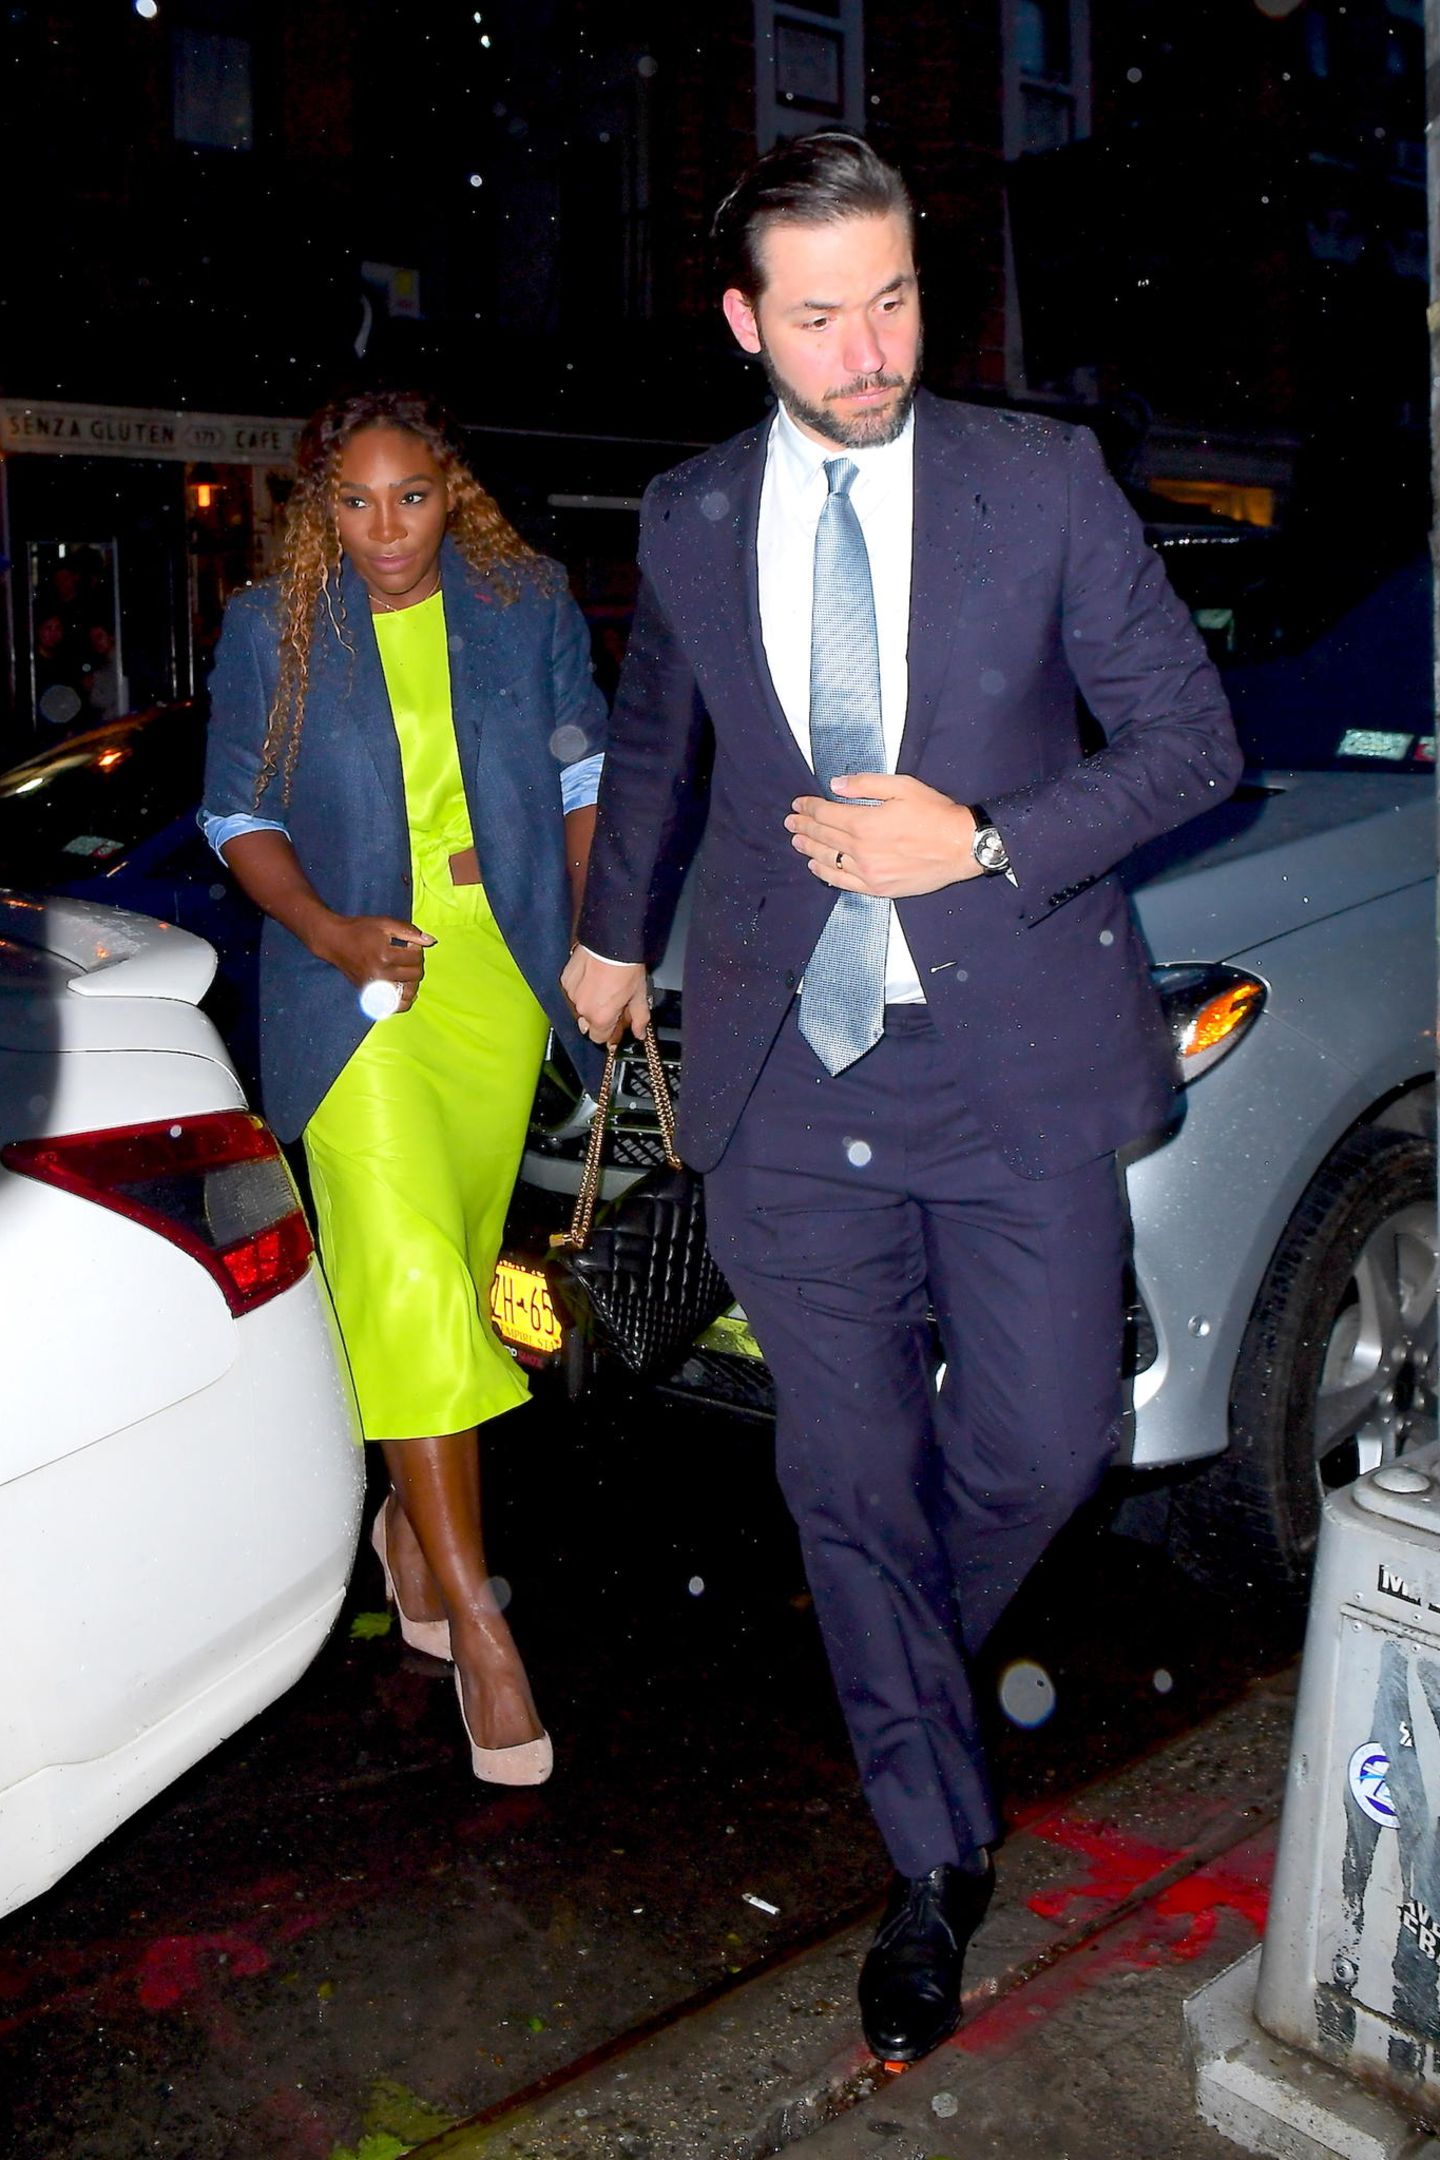 In diesem Outfit ist Serena Williams nicht zu übersehen. Die Tennisspielerin wählt für das Dinner ein neonfarbenes Kleid mit Cut-Outs. Ihr blauer Blazer passt farblich zu dem schlichten Anzug ihres Ehemannes Alexis Ohanian.